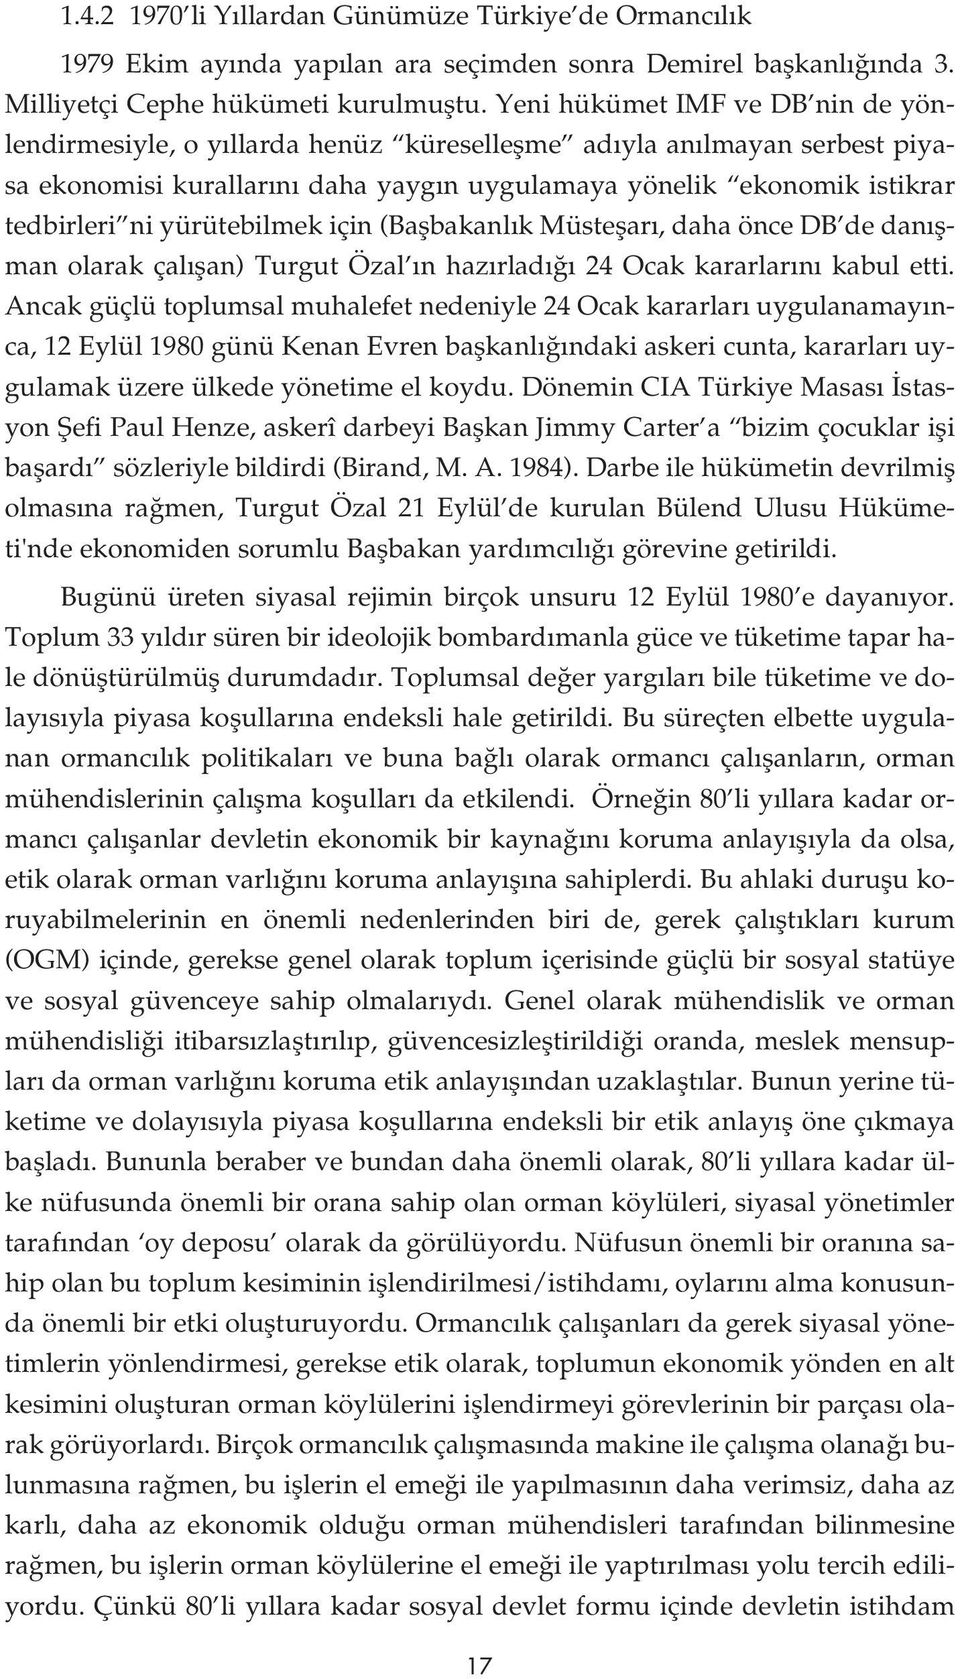 yürütebilmek için (Baflbakanl k Müsteflar, daha önce DB de dan flman olarak çal flan) Turgut Özal n haz rlad 24 Ocak kararlar n kabul etti.